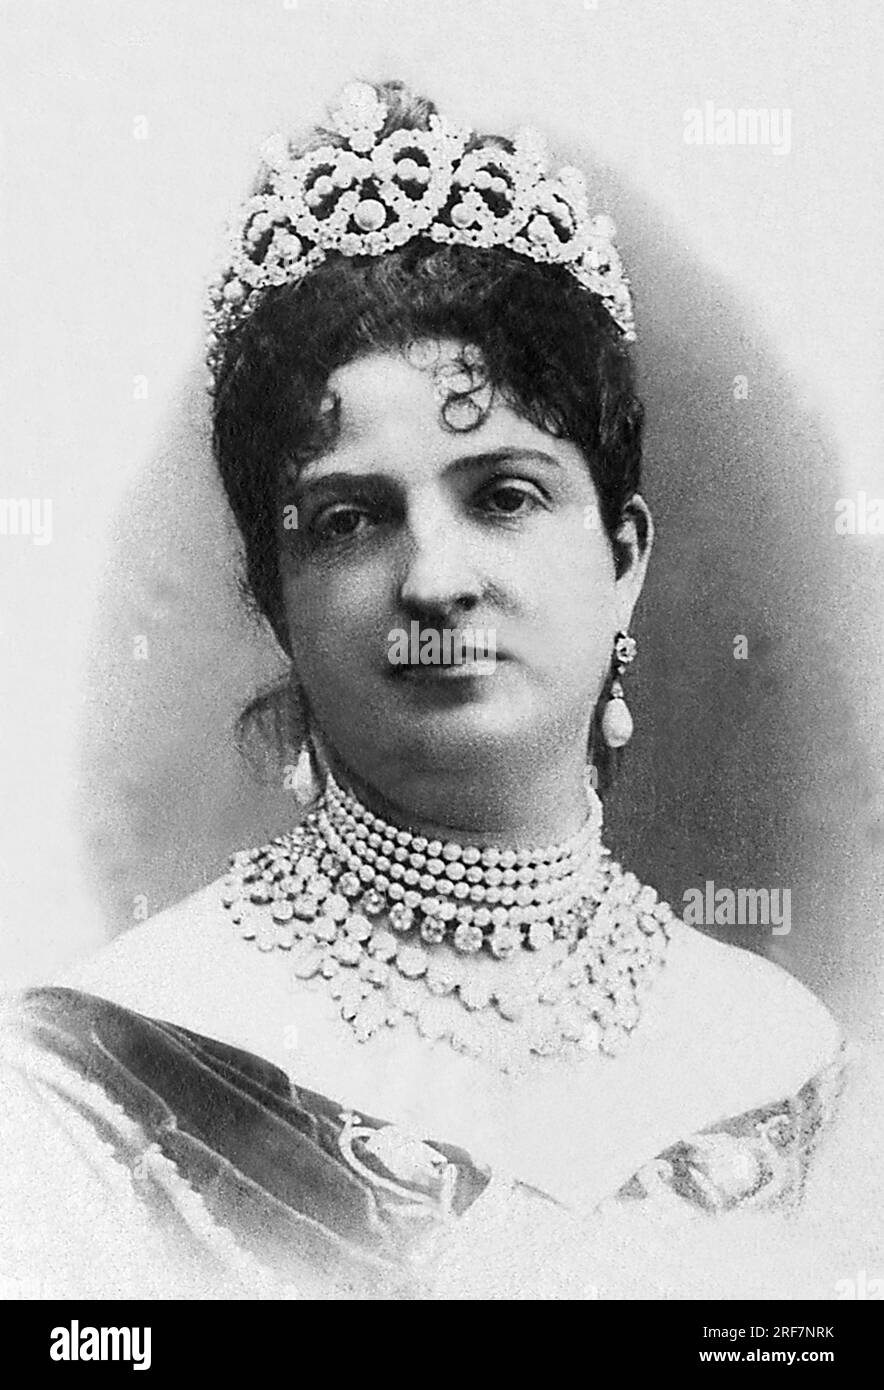 Portrait de Marguerite de Savoie Gens (1851-1926), reine d'Italie (1878-1900) et epouse du roi d'Italie, Humbert Ier. Stockfoto